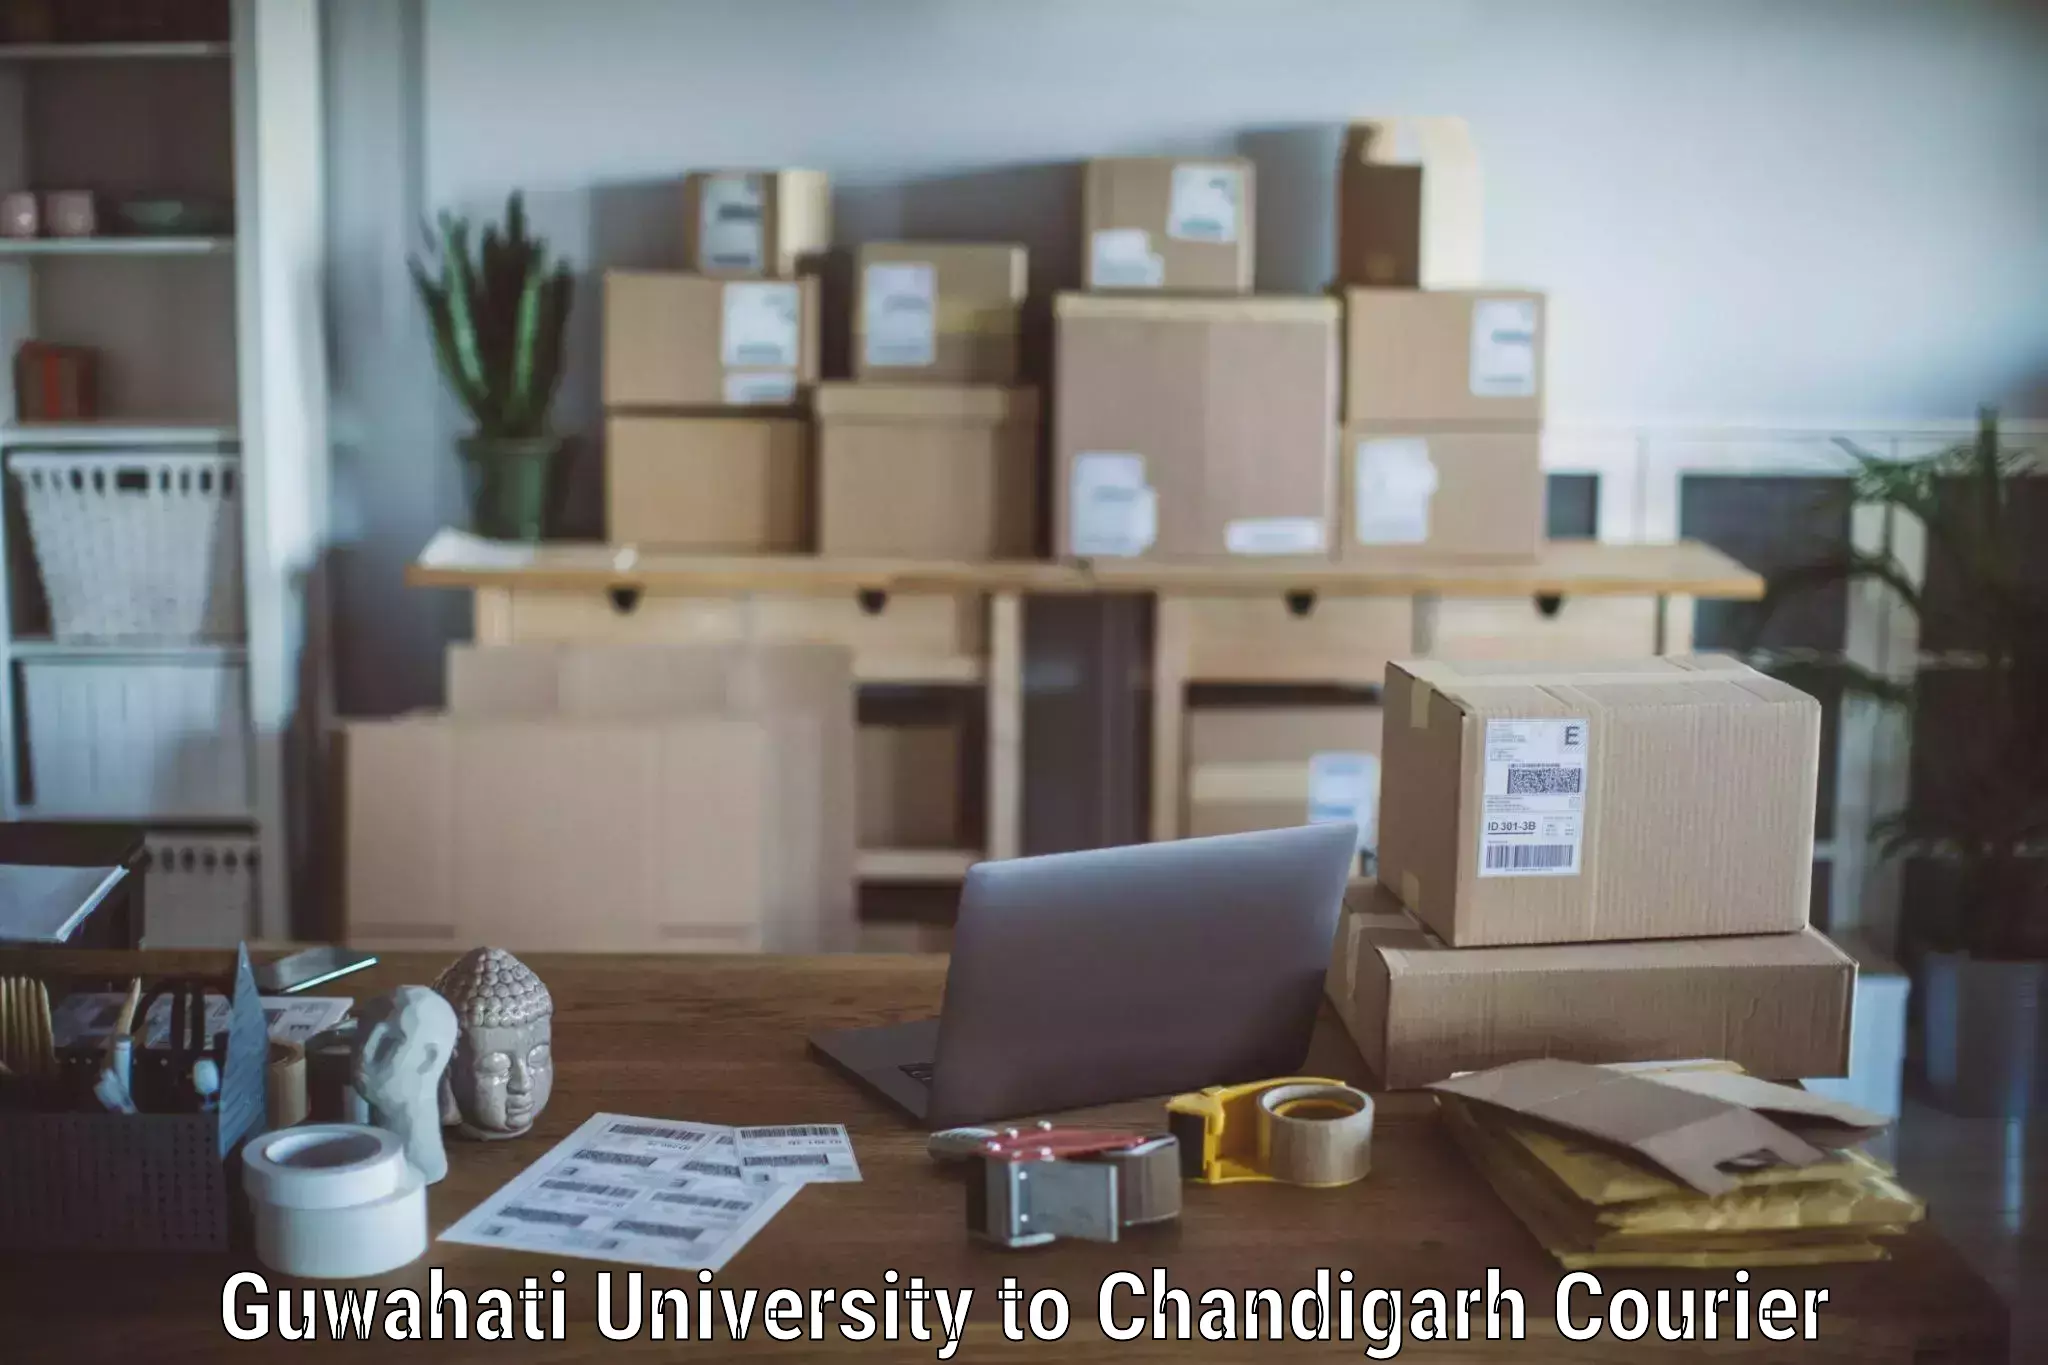 Professional movers Guwahati University to Panjab University Chandigarh